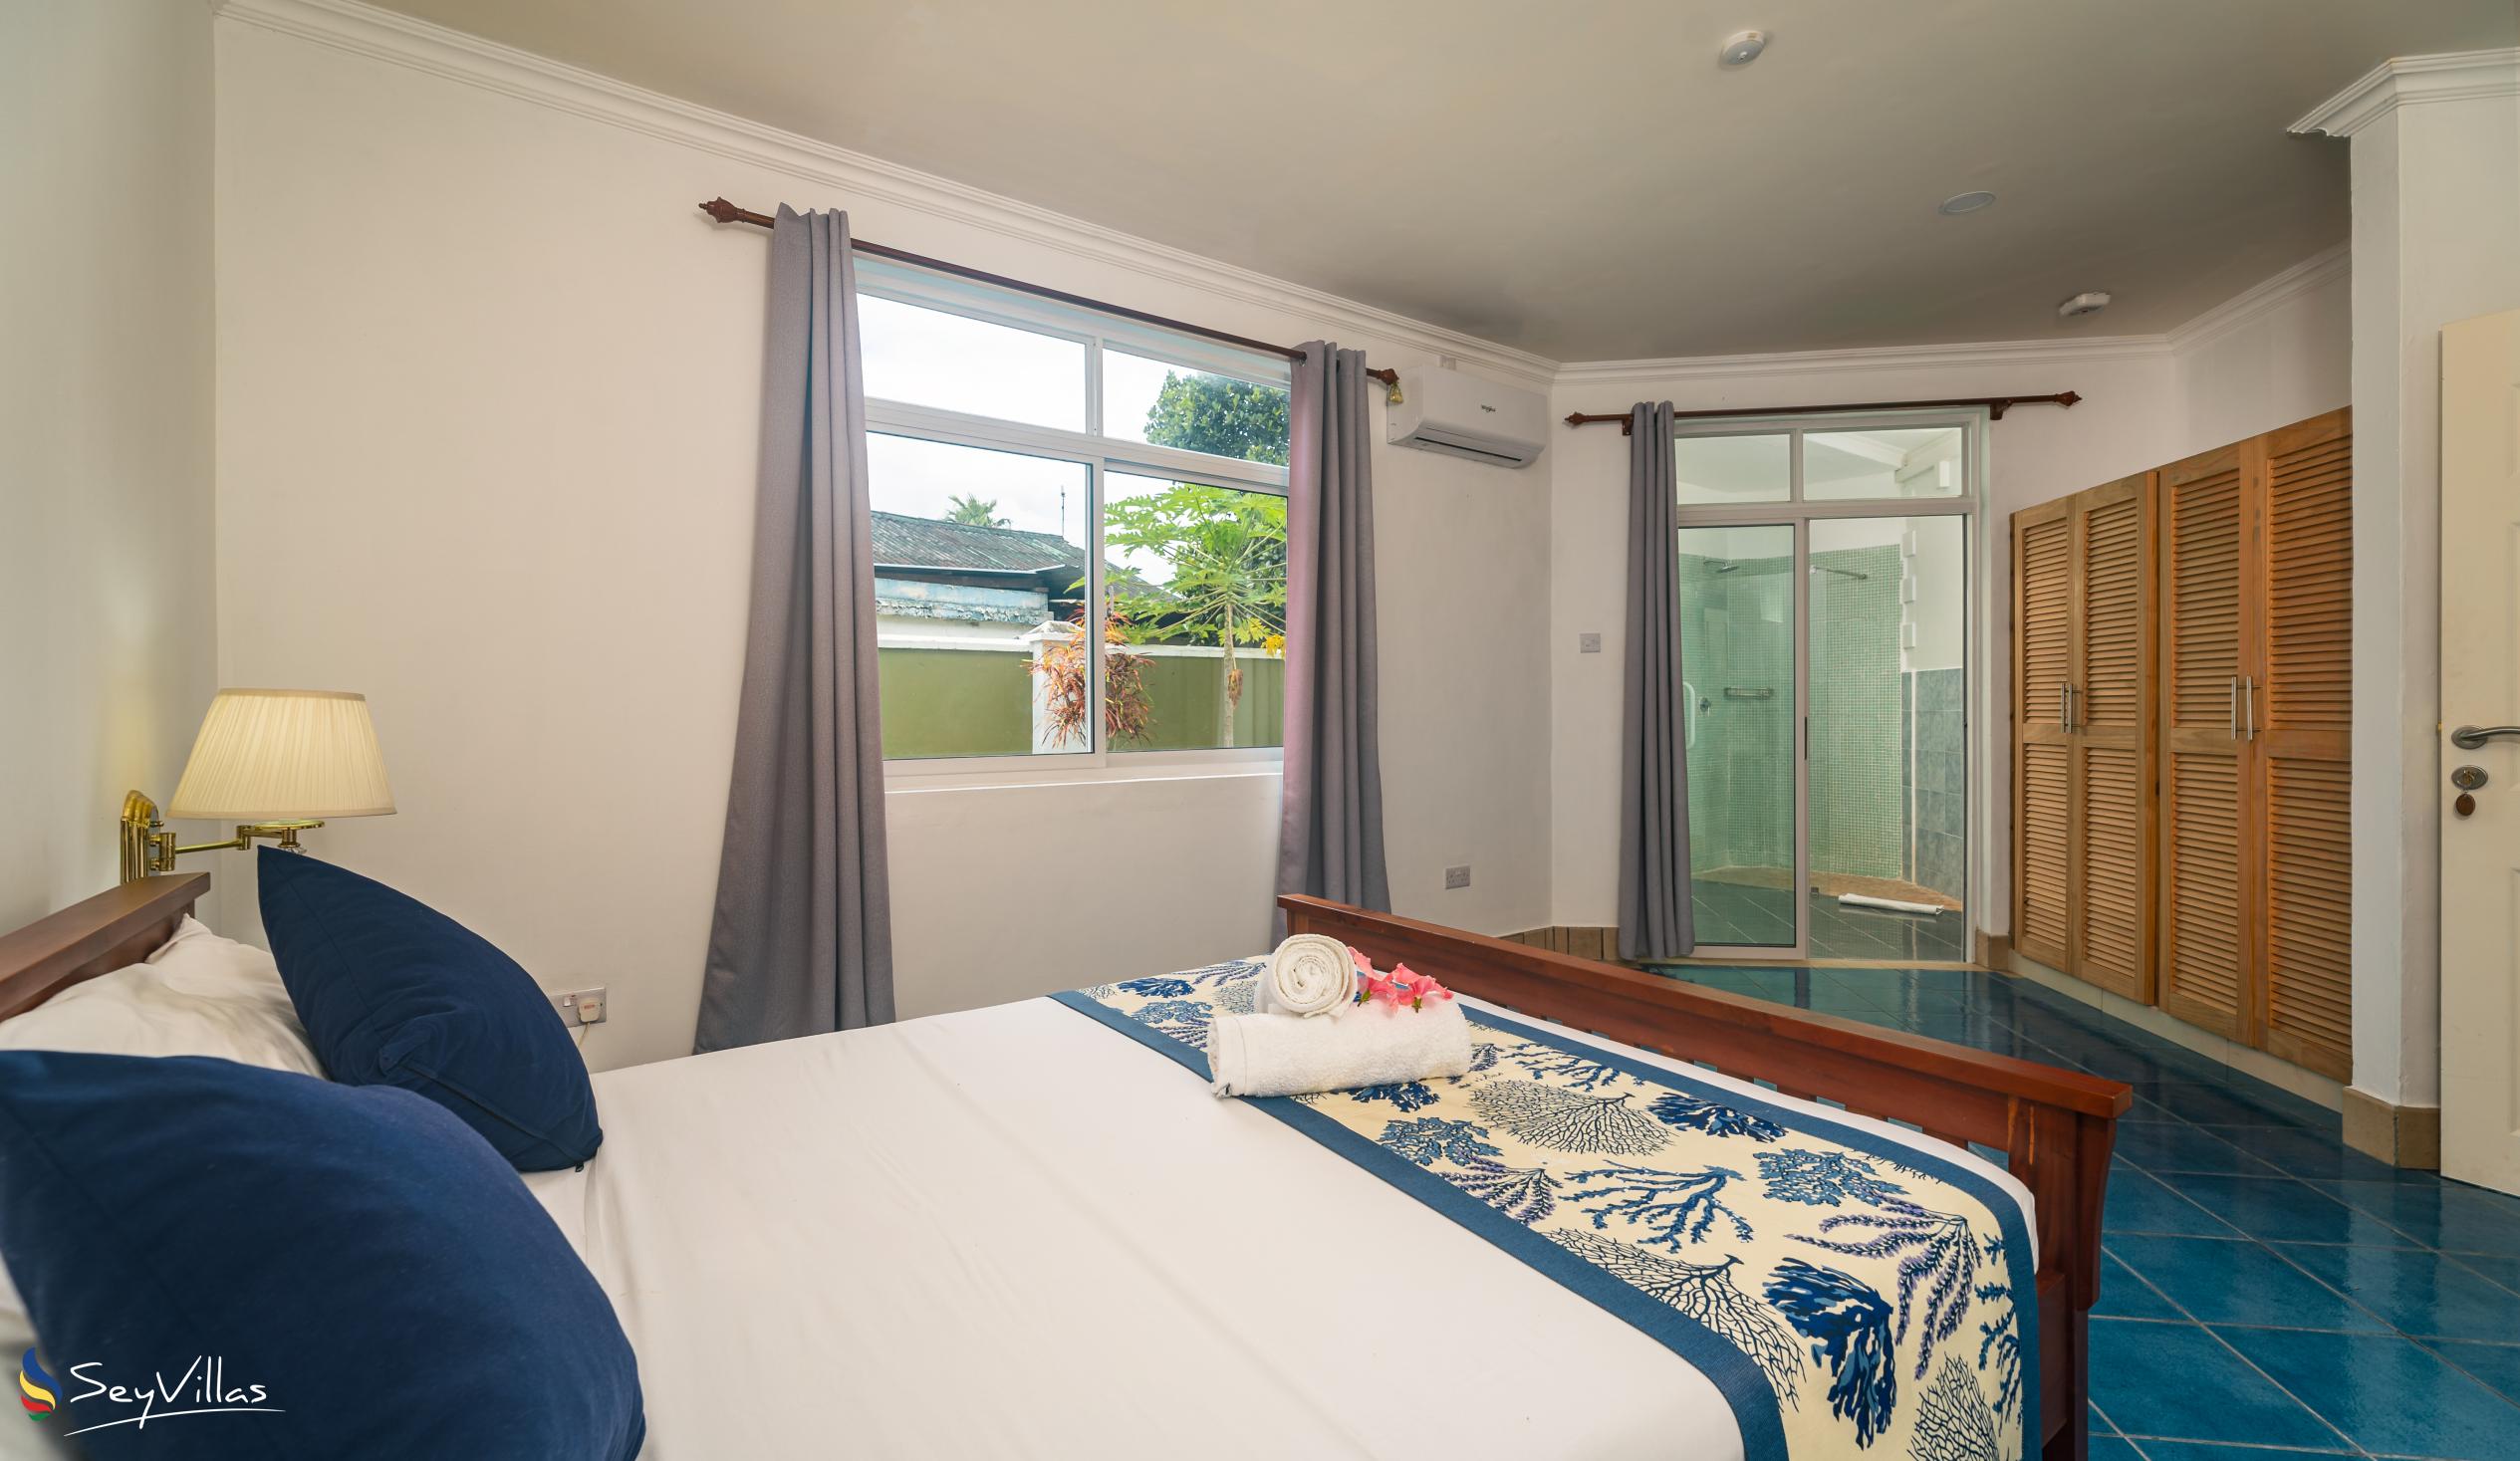 Foto 90: 340 Degrees Mountain View Apartments - Chambre double standard avec vue sur le jardin - Mahé (Seychelles)